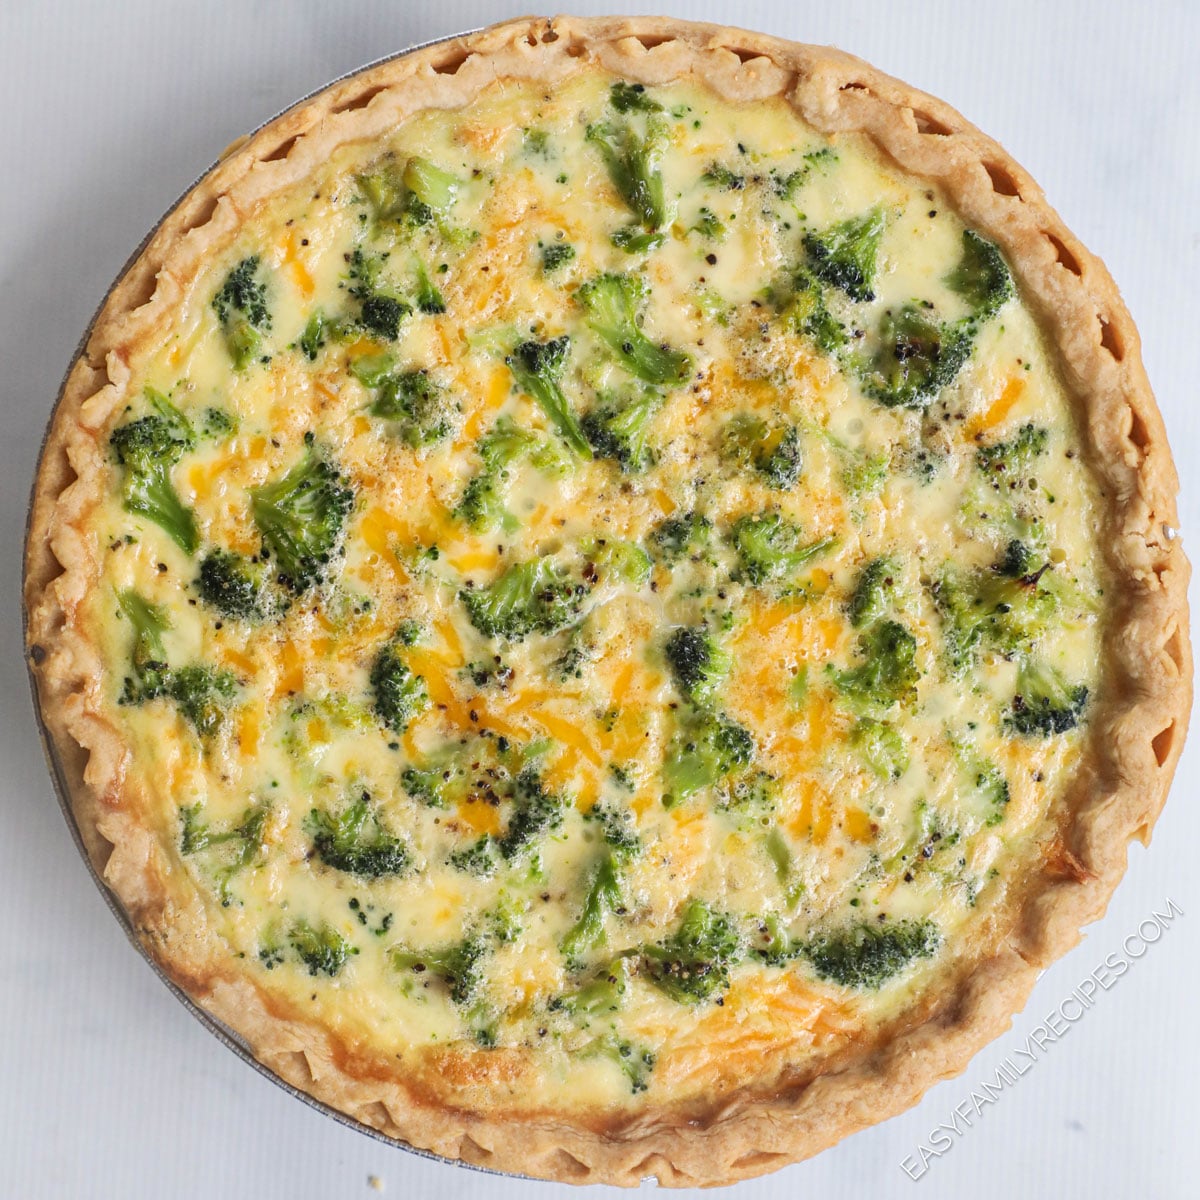 Easy Broccoli Cheese Quiche (5 Ingredients) - Kristine's Kitchen